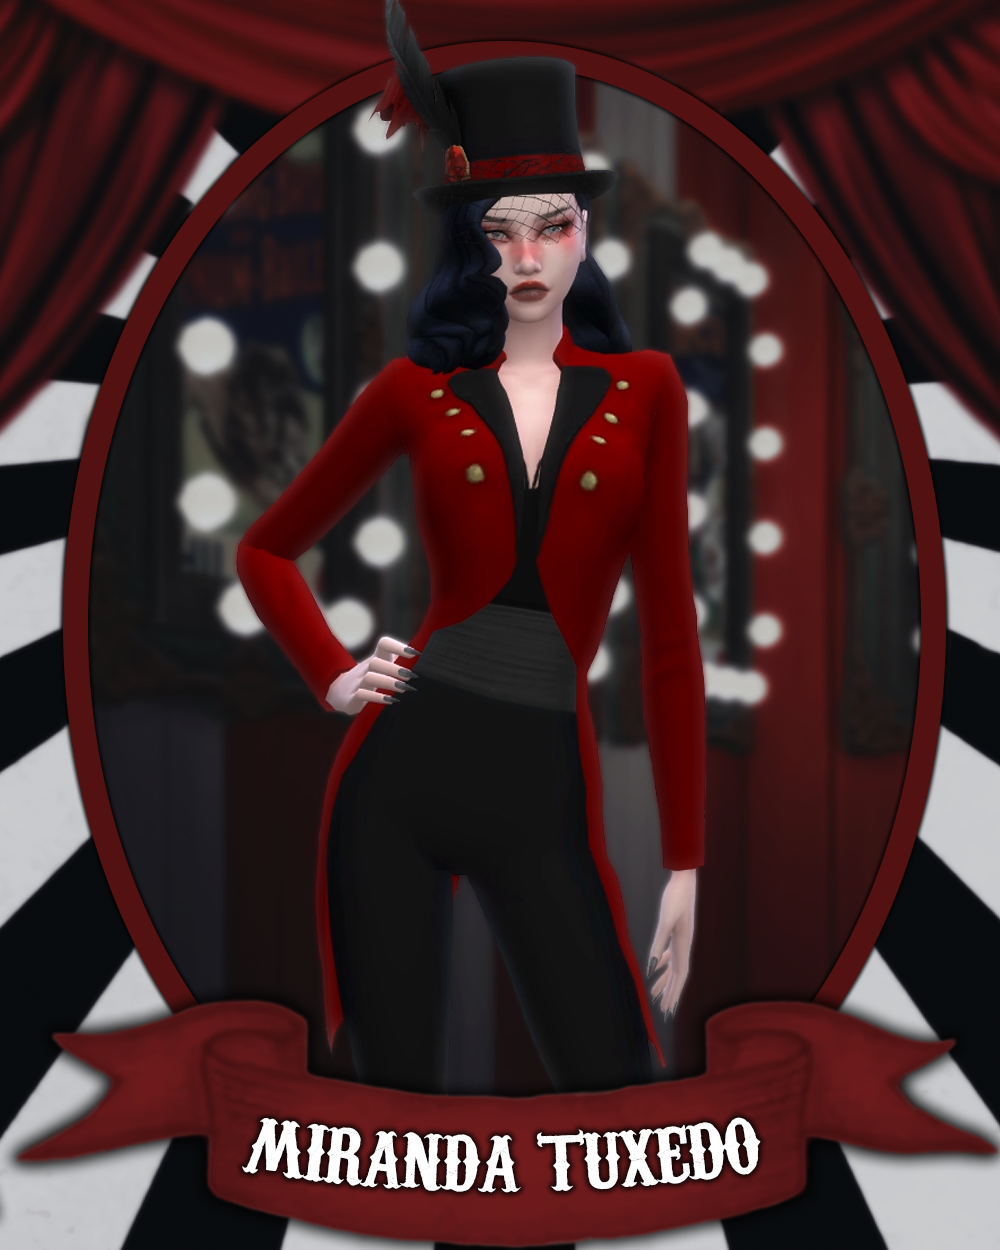 Miranda Tuxedo (The Circus Collection) - The Sims 4 Create a Sim ...